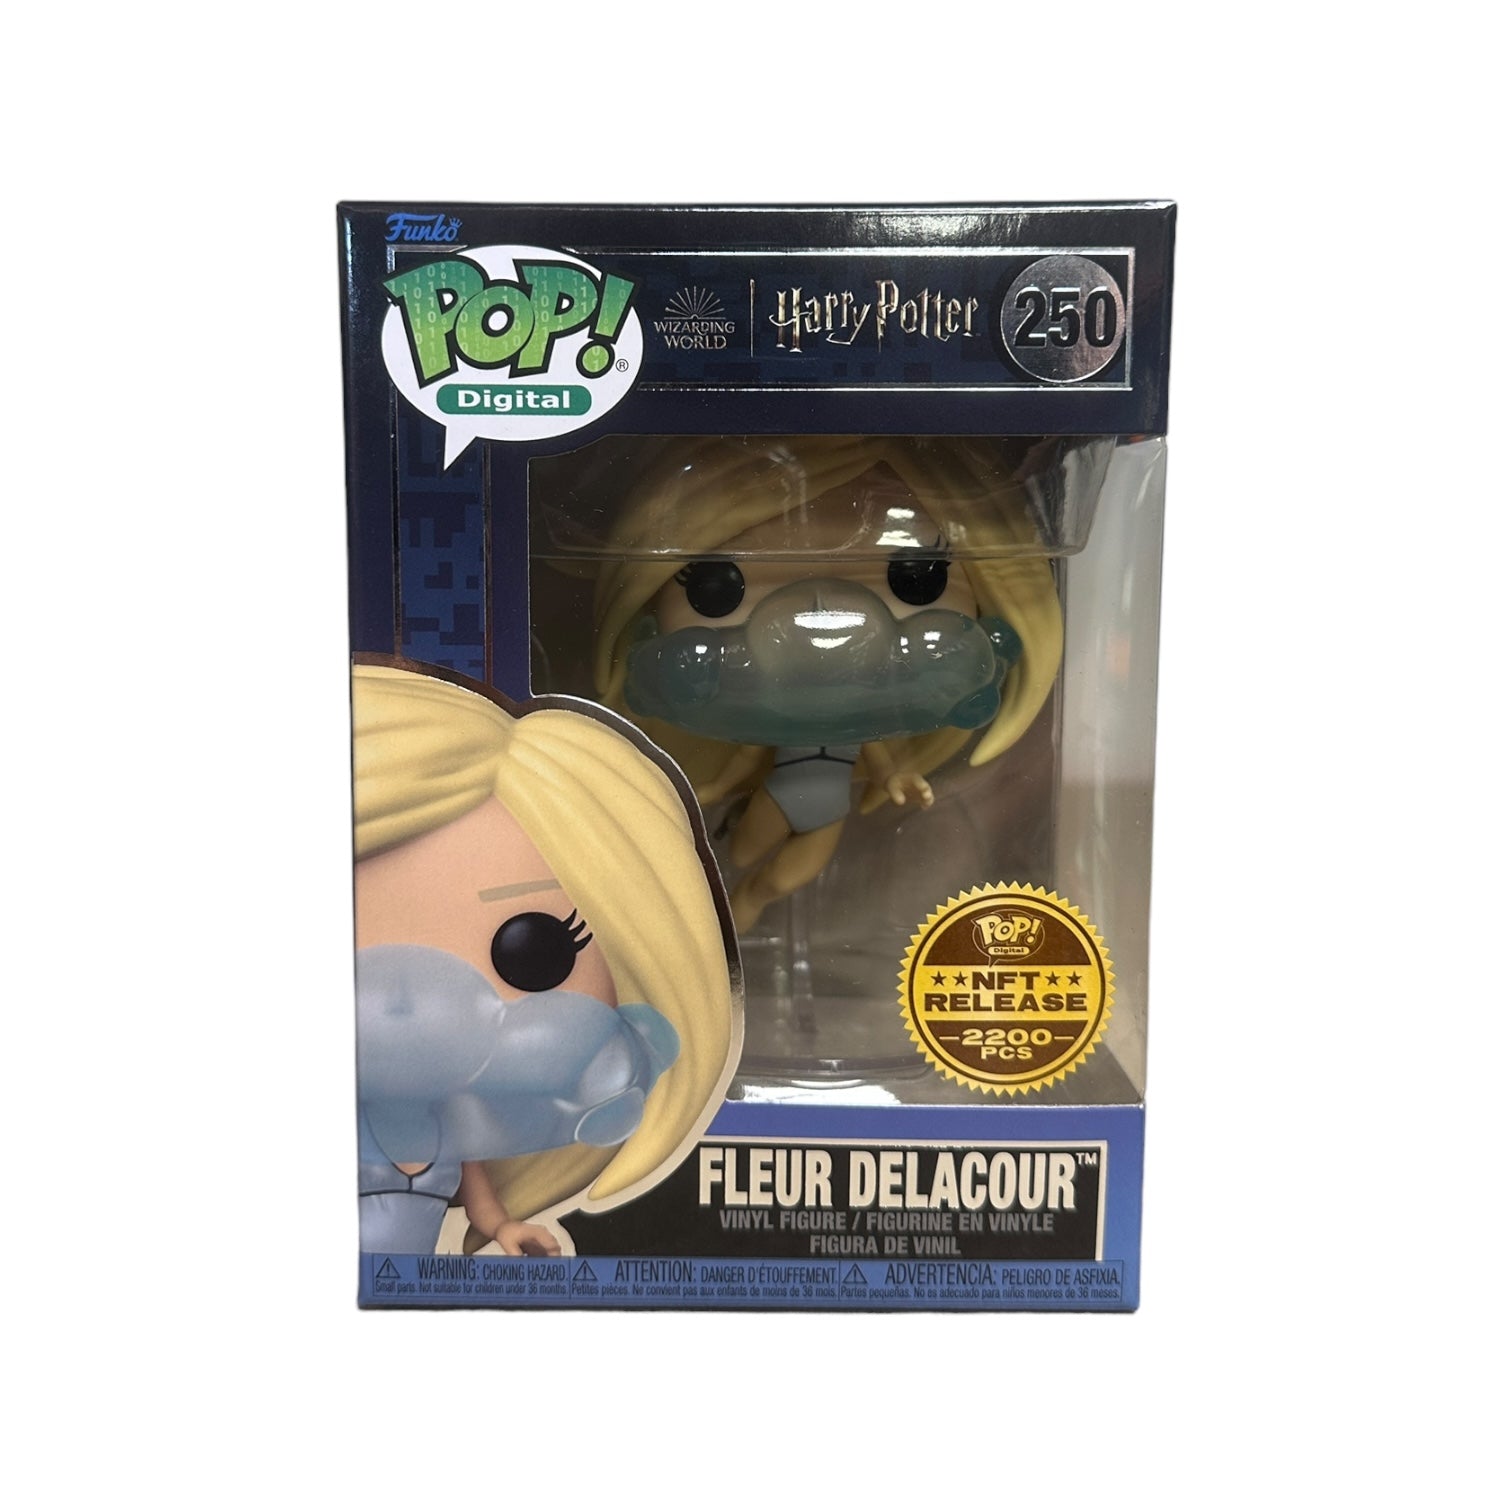 Fleur Delacour #250 (w/ Bubble Air Mask) Funko Pop! - Harry Potter - NFT Release Exclusive LE2200 Pcs - Condition 9/10